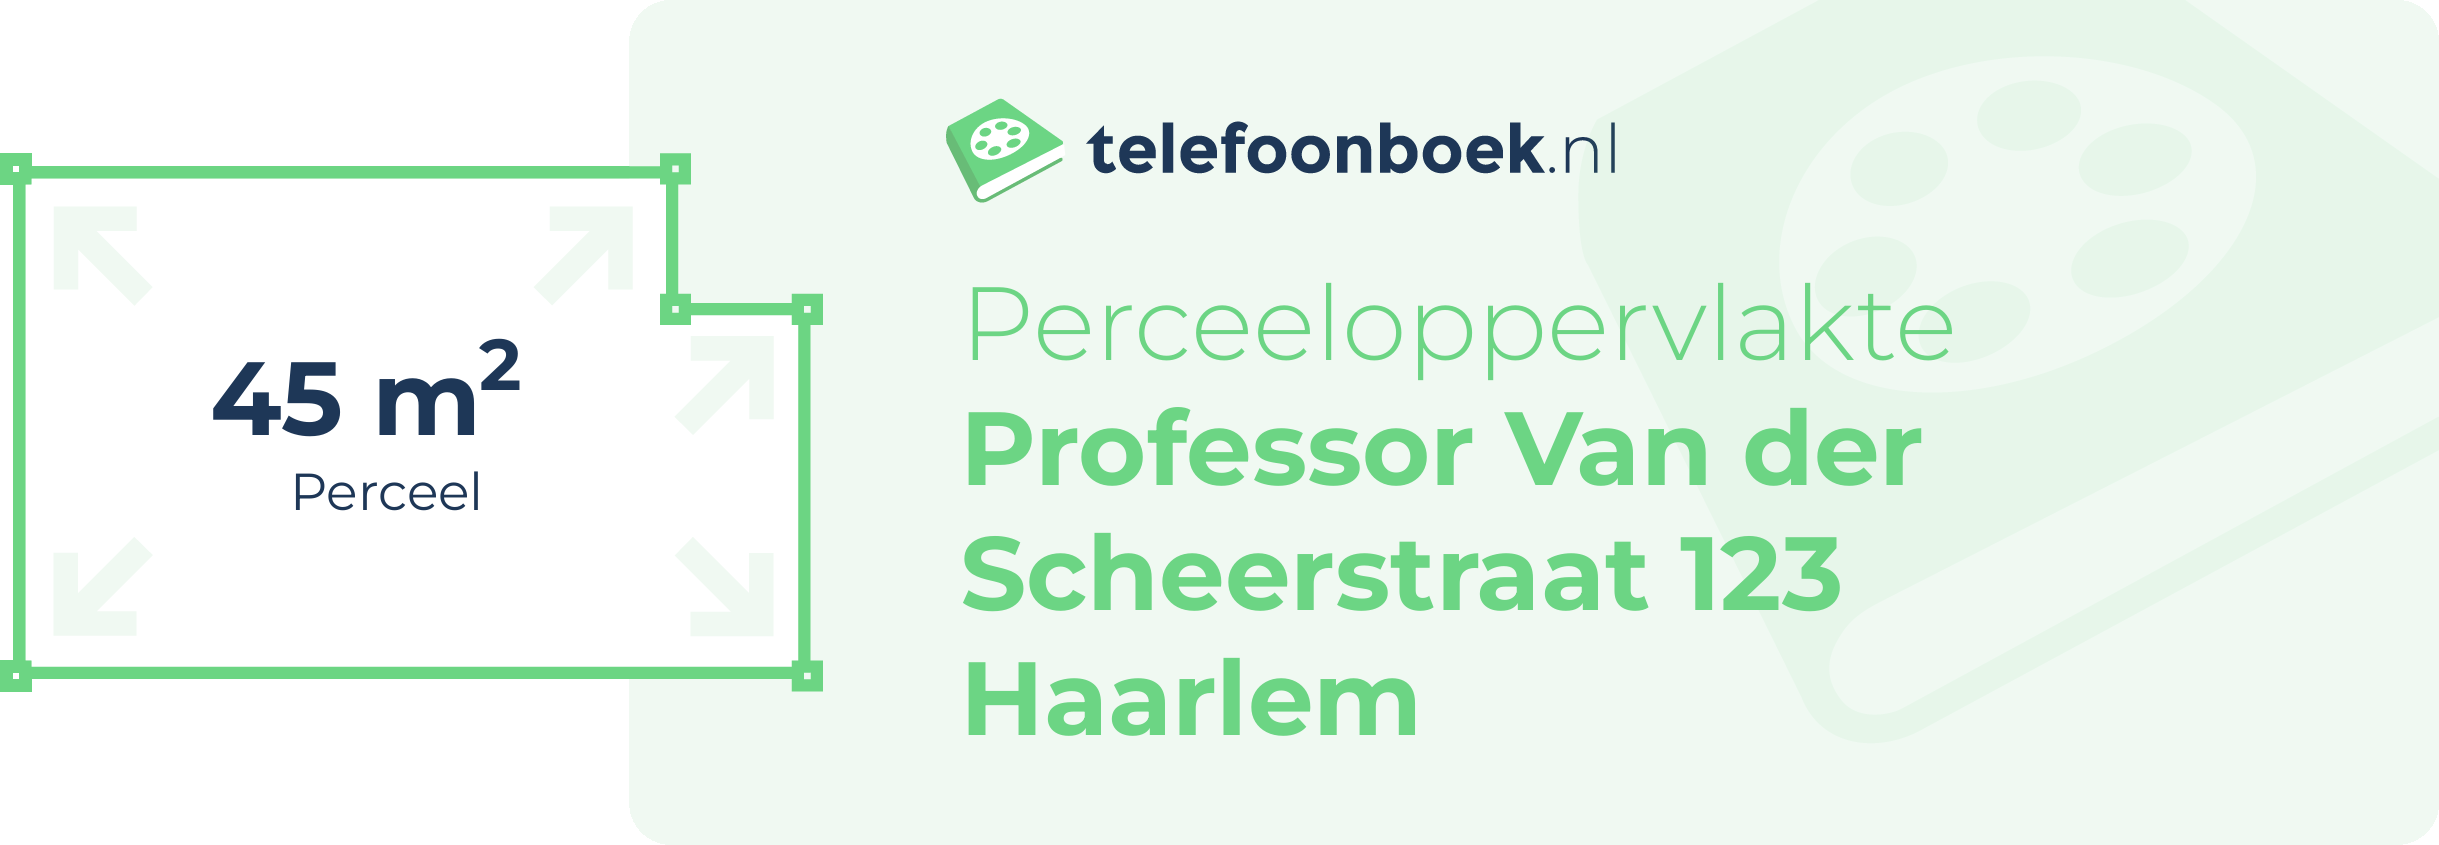 Perceeloppervlakte Professor Van Der Scheerstraat 123 Haarlem